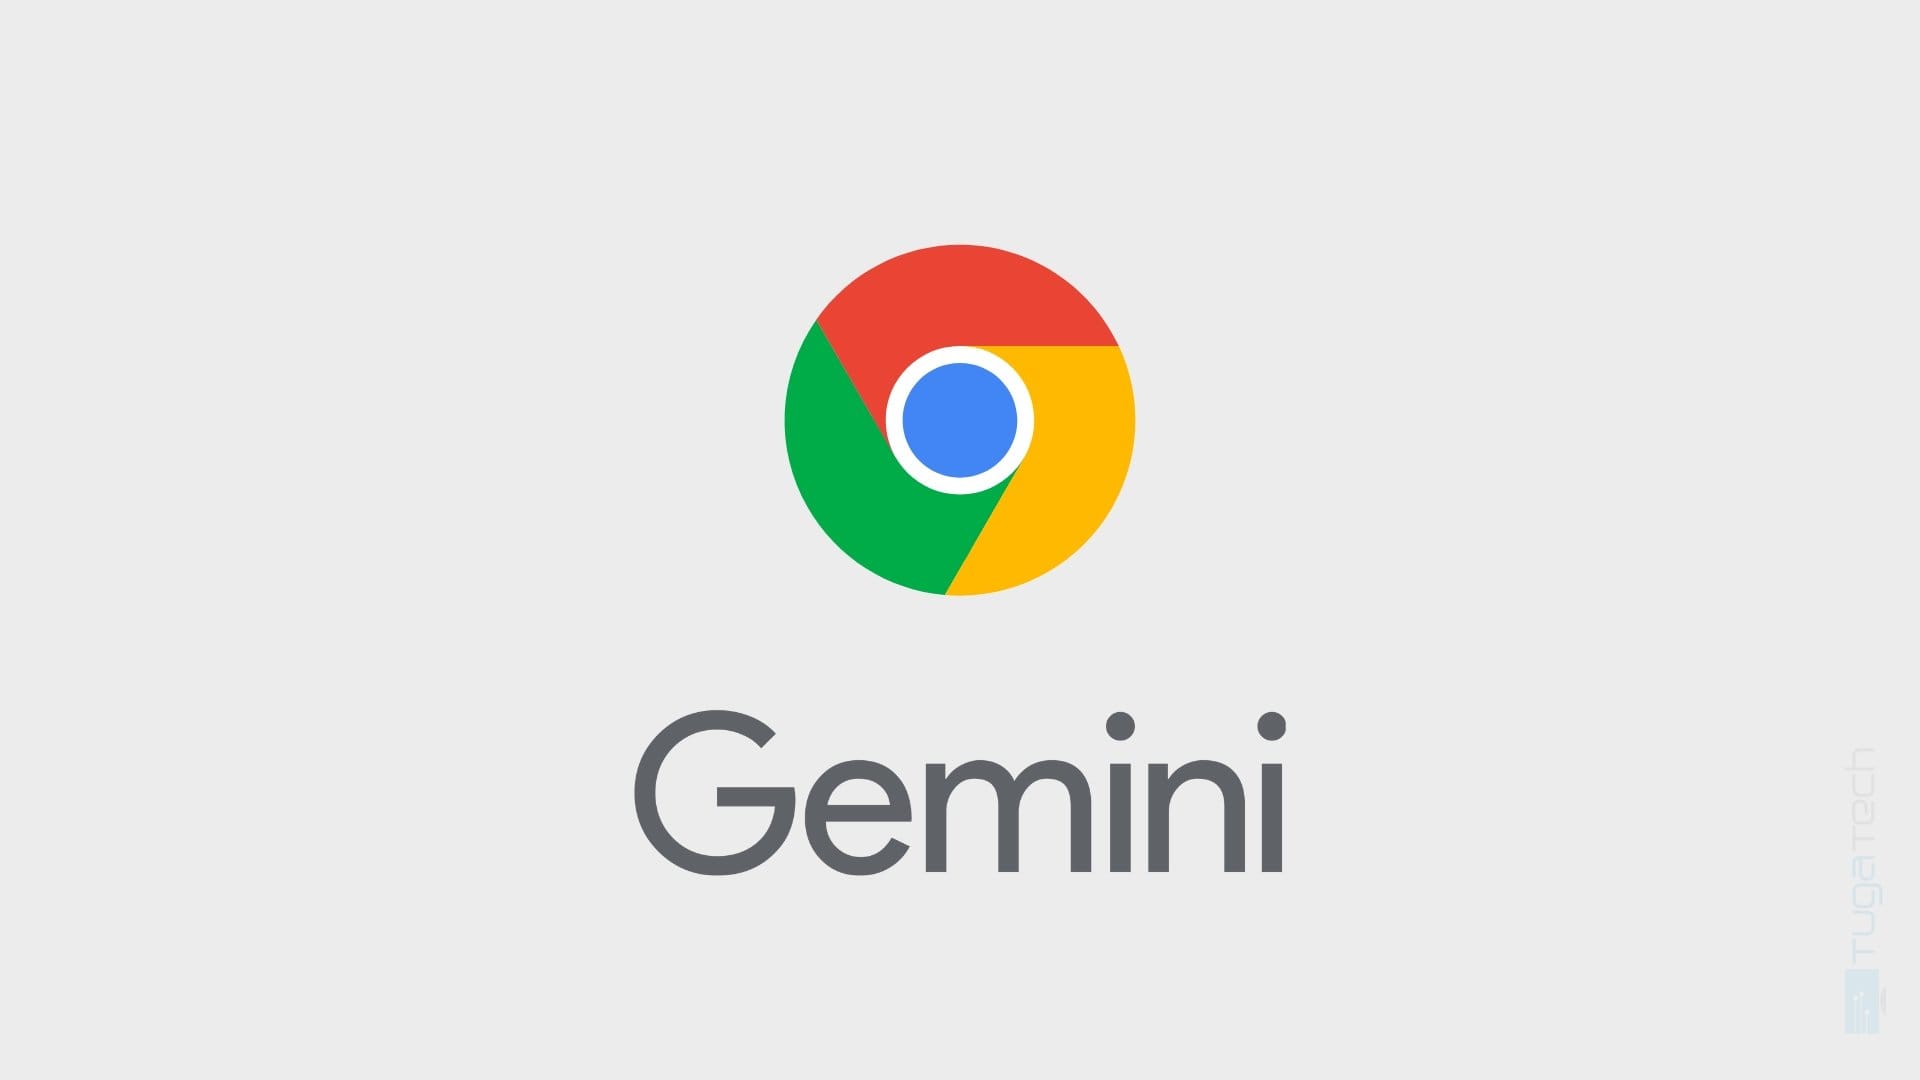 В адресной строке Google Chrome появилась поддержка чат-бота Gemini